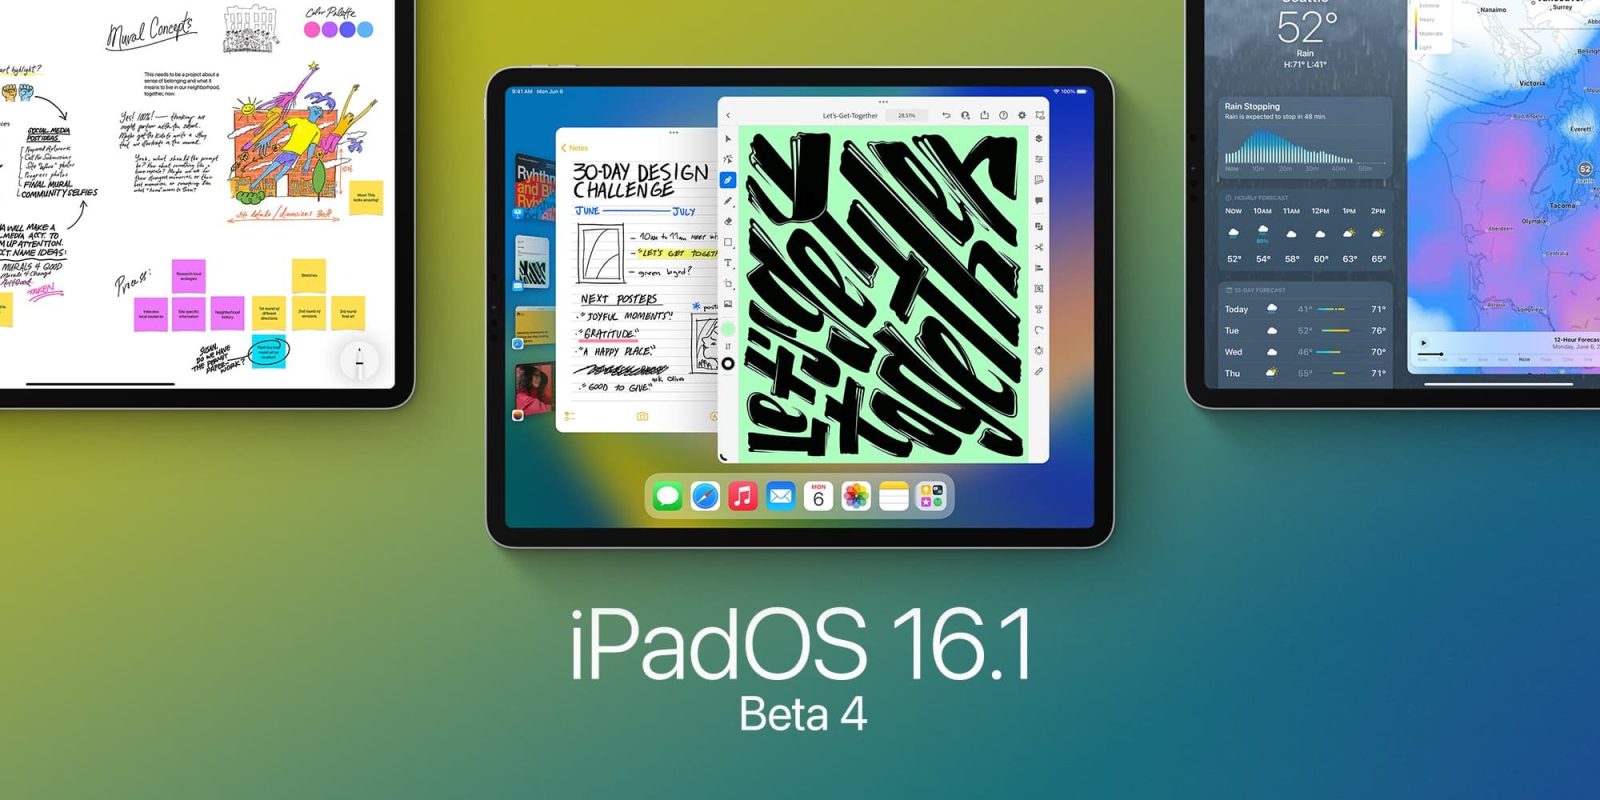 iPadOS 16.1 beta 4